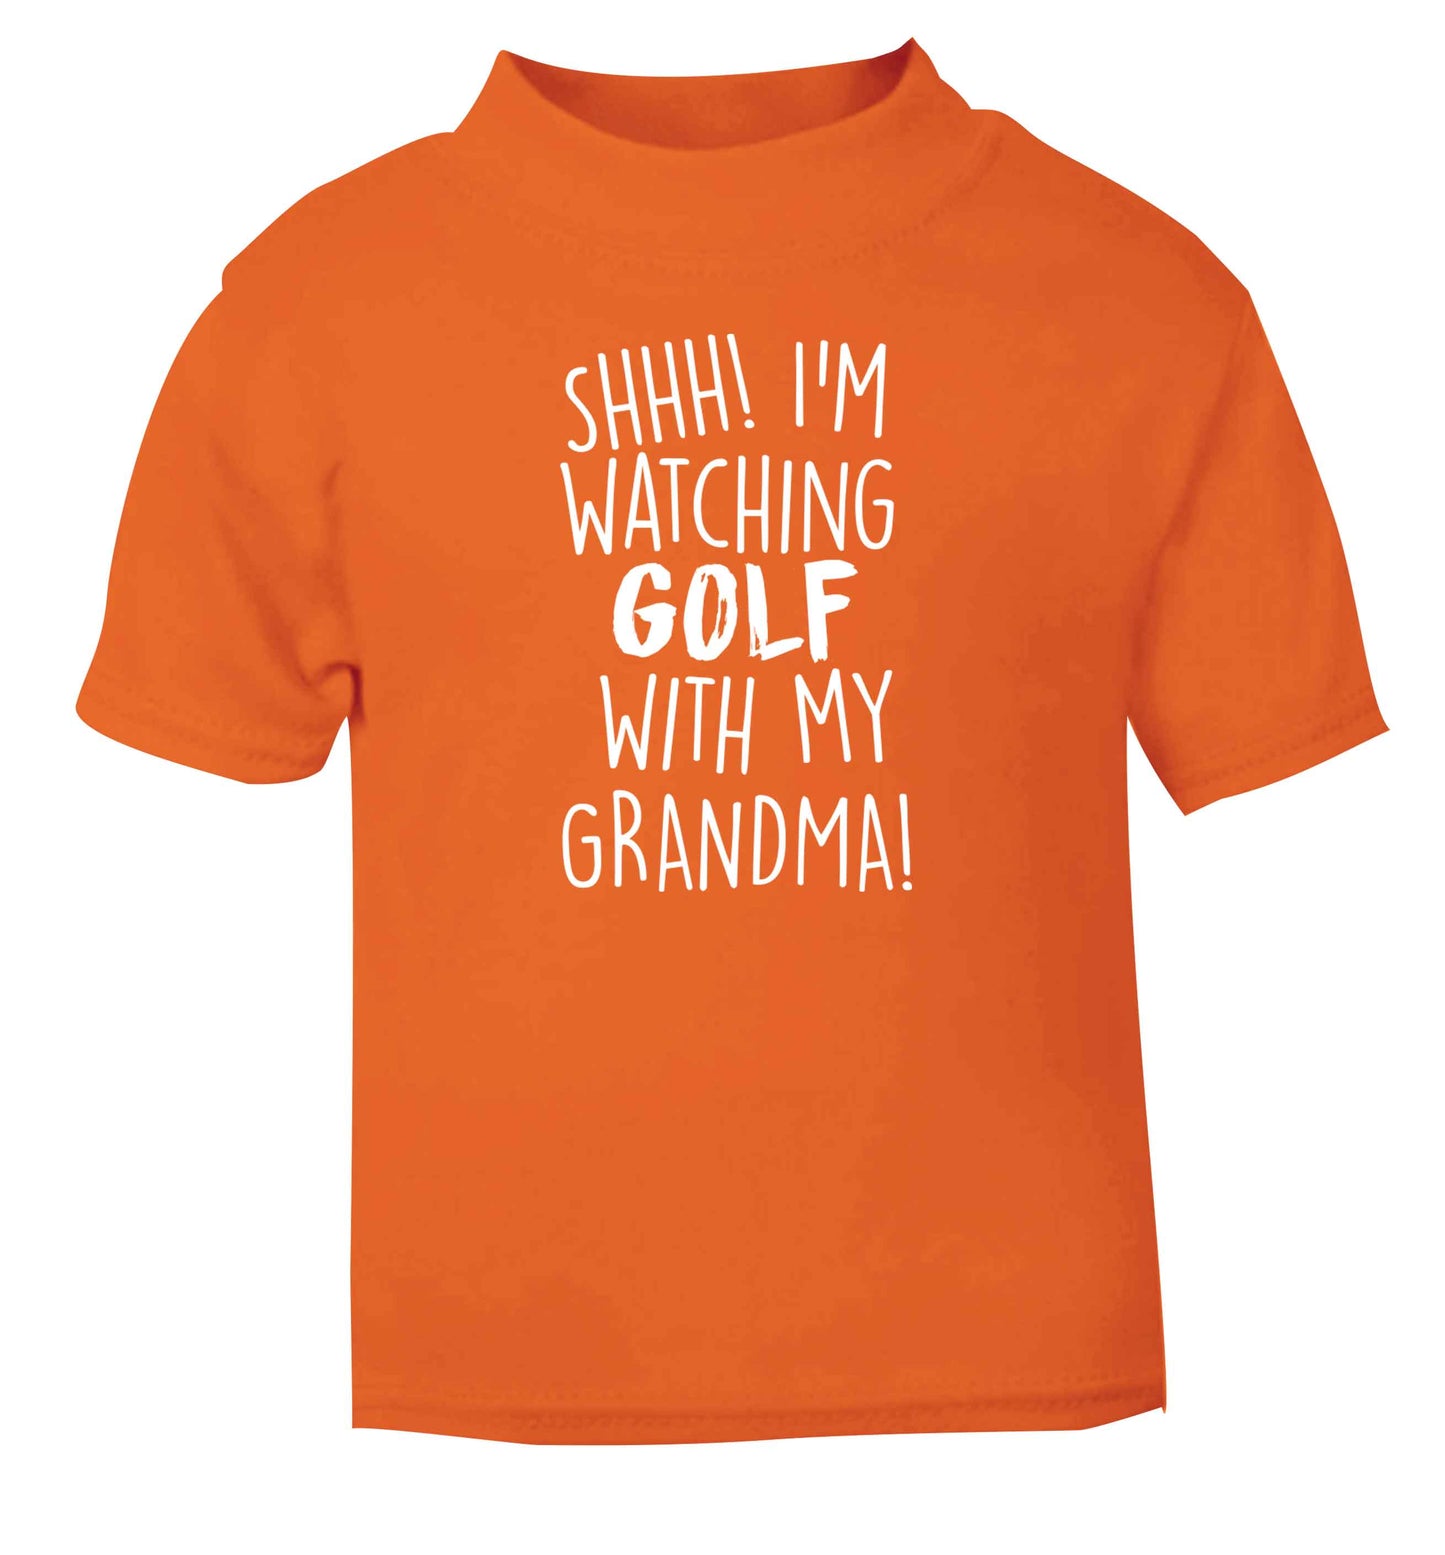 Shh I'm watching golf with my grandma orange Baby Toddler Tshirt 2 Years